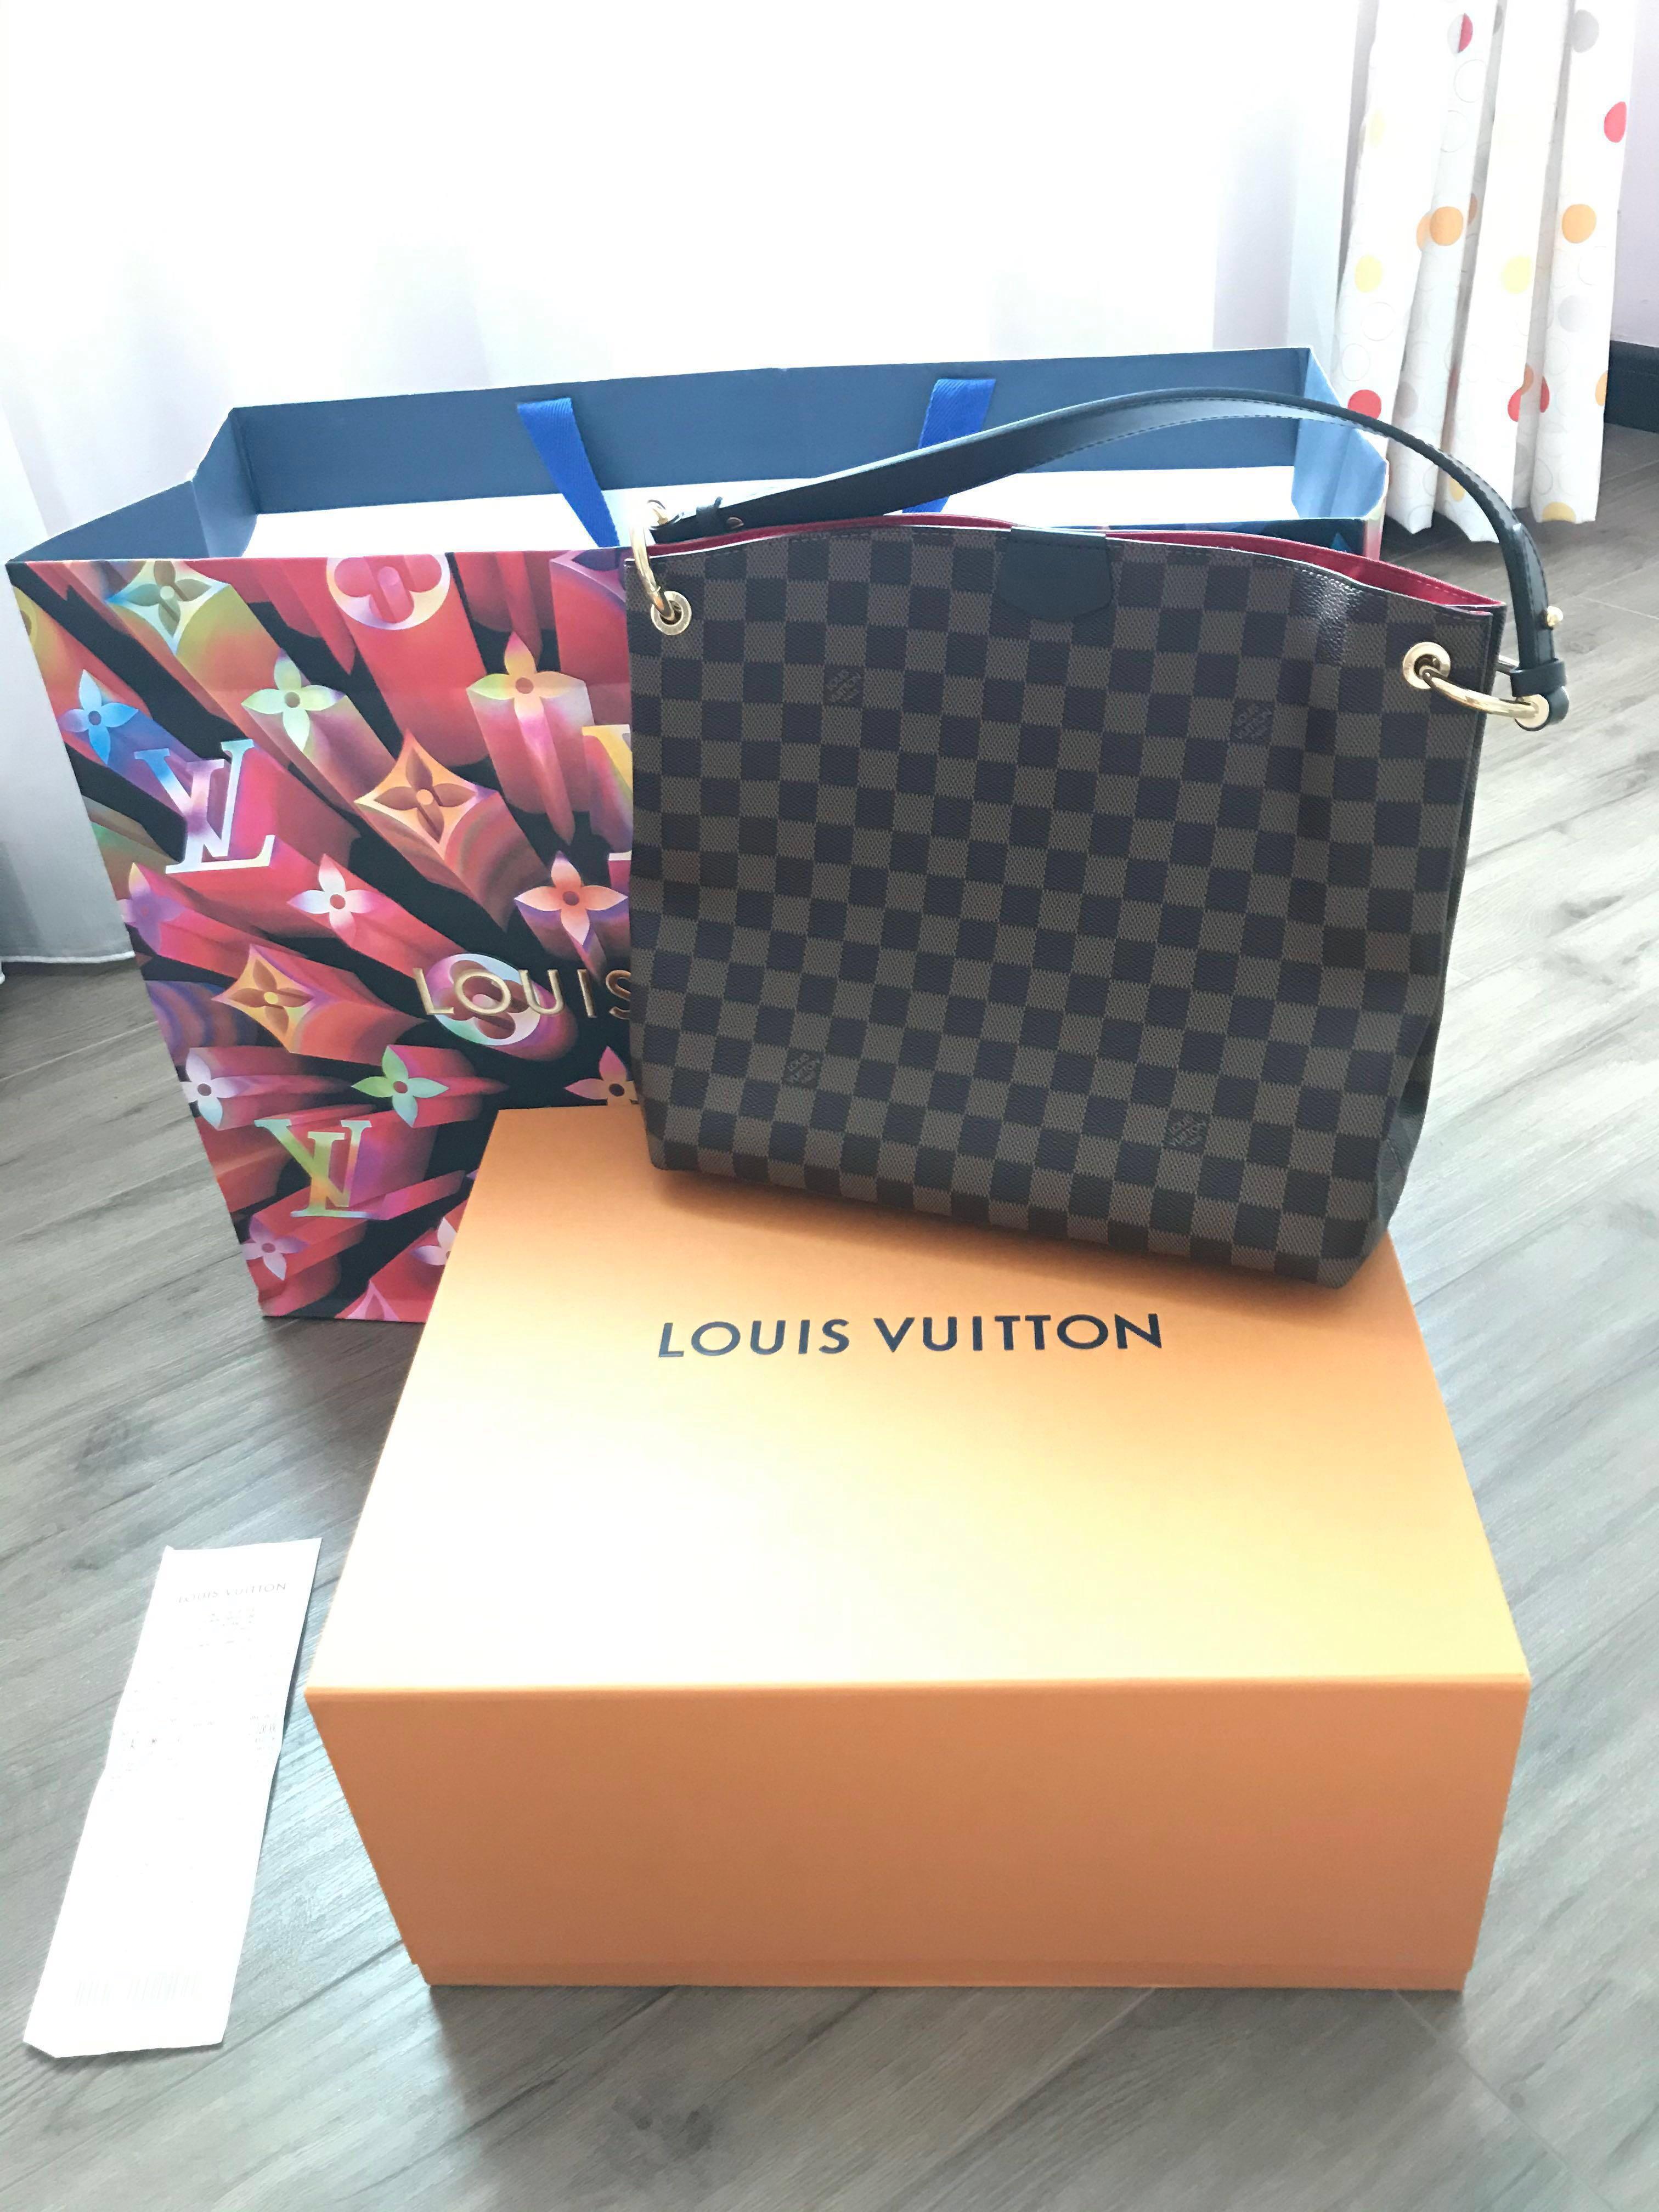 Louis Vuitton Graceful PM Damier Ebene Unboxing / Mod Shots